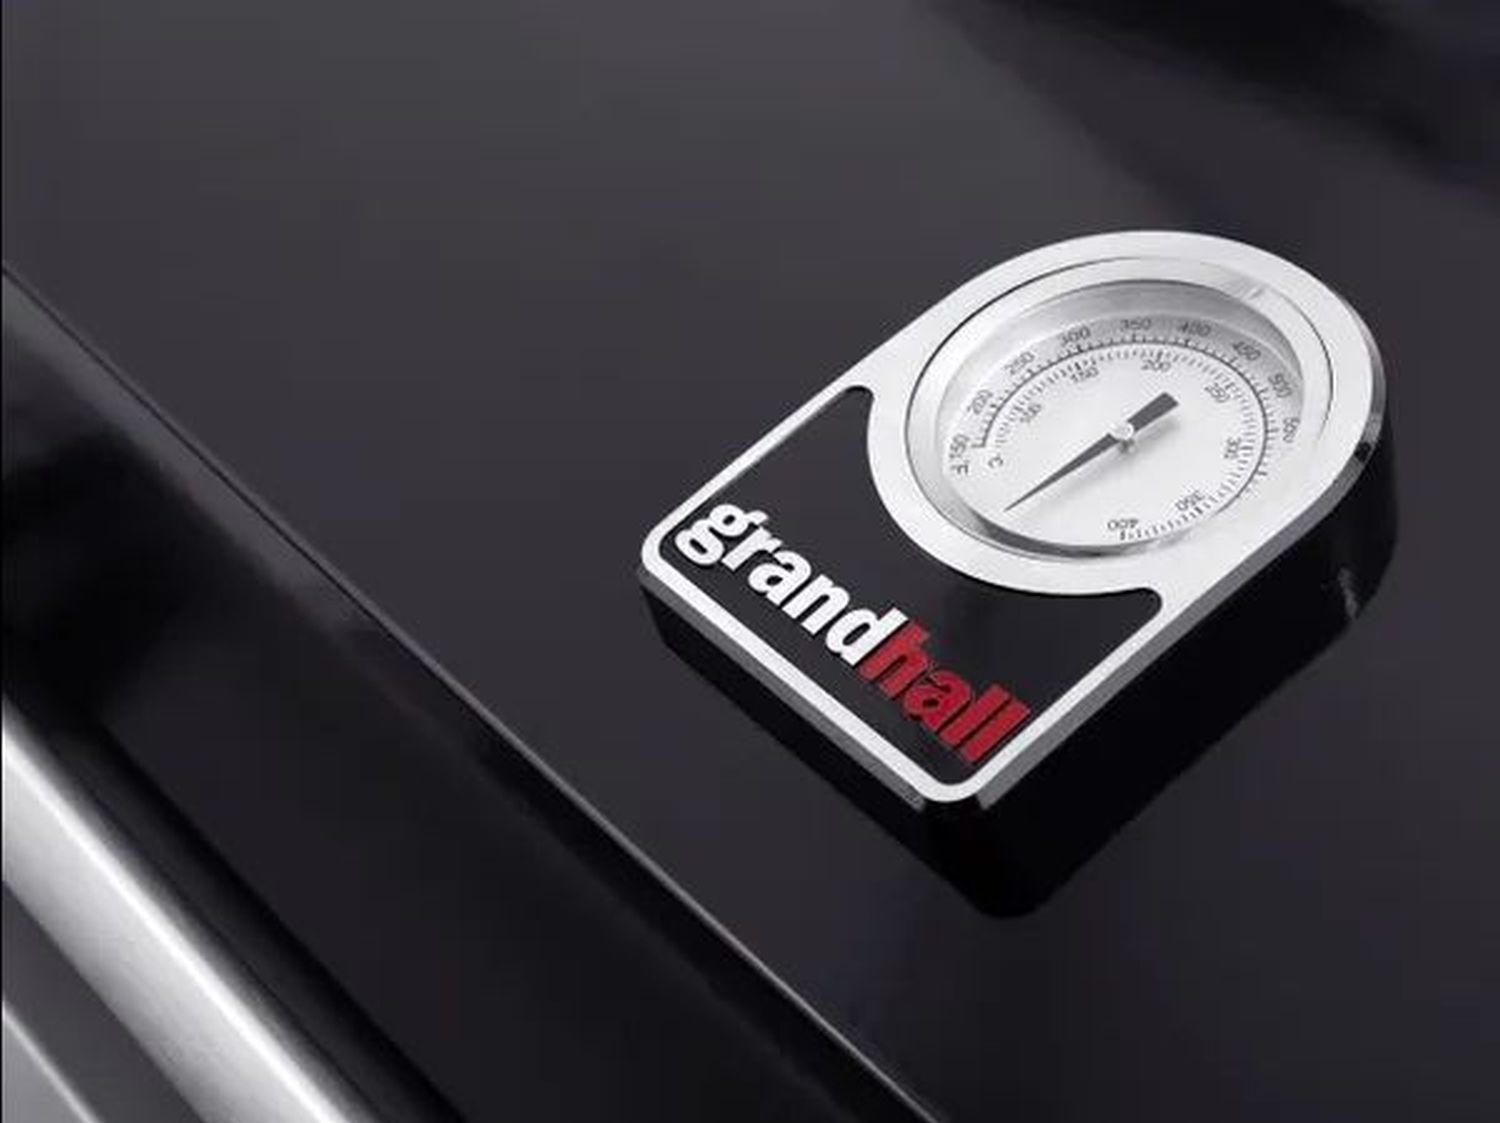 Grandhall Gasgrill Premium G4 Tolley | Gasgrill mit Unterwagen/Trolley in edlem Design und hochwertiger Oberfläche in schwarz